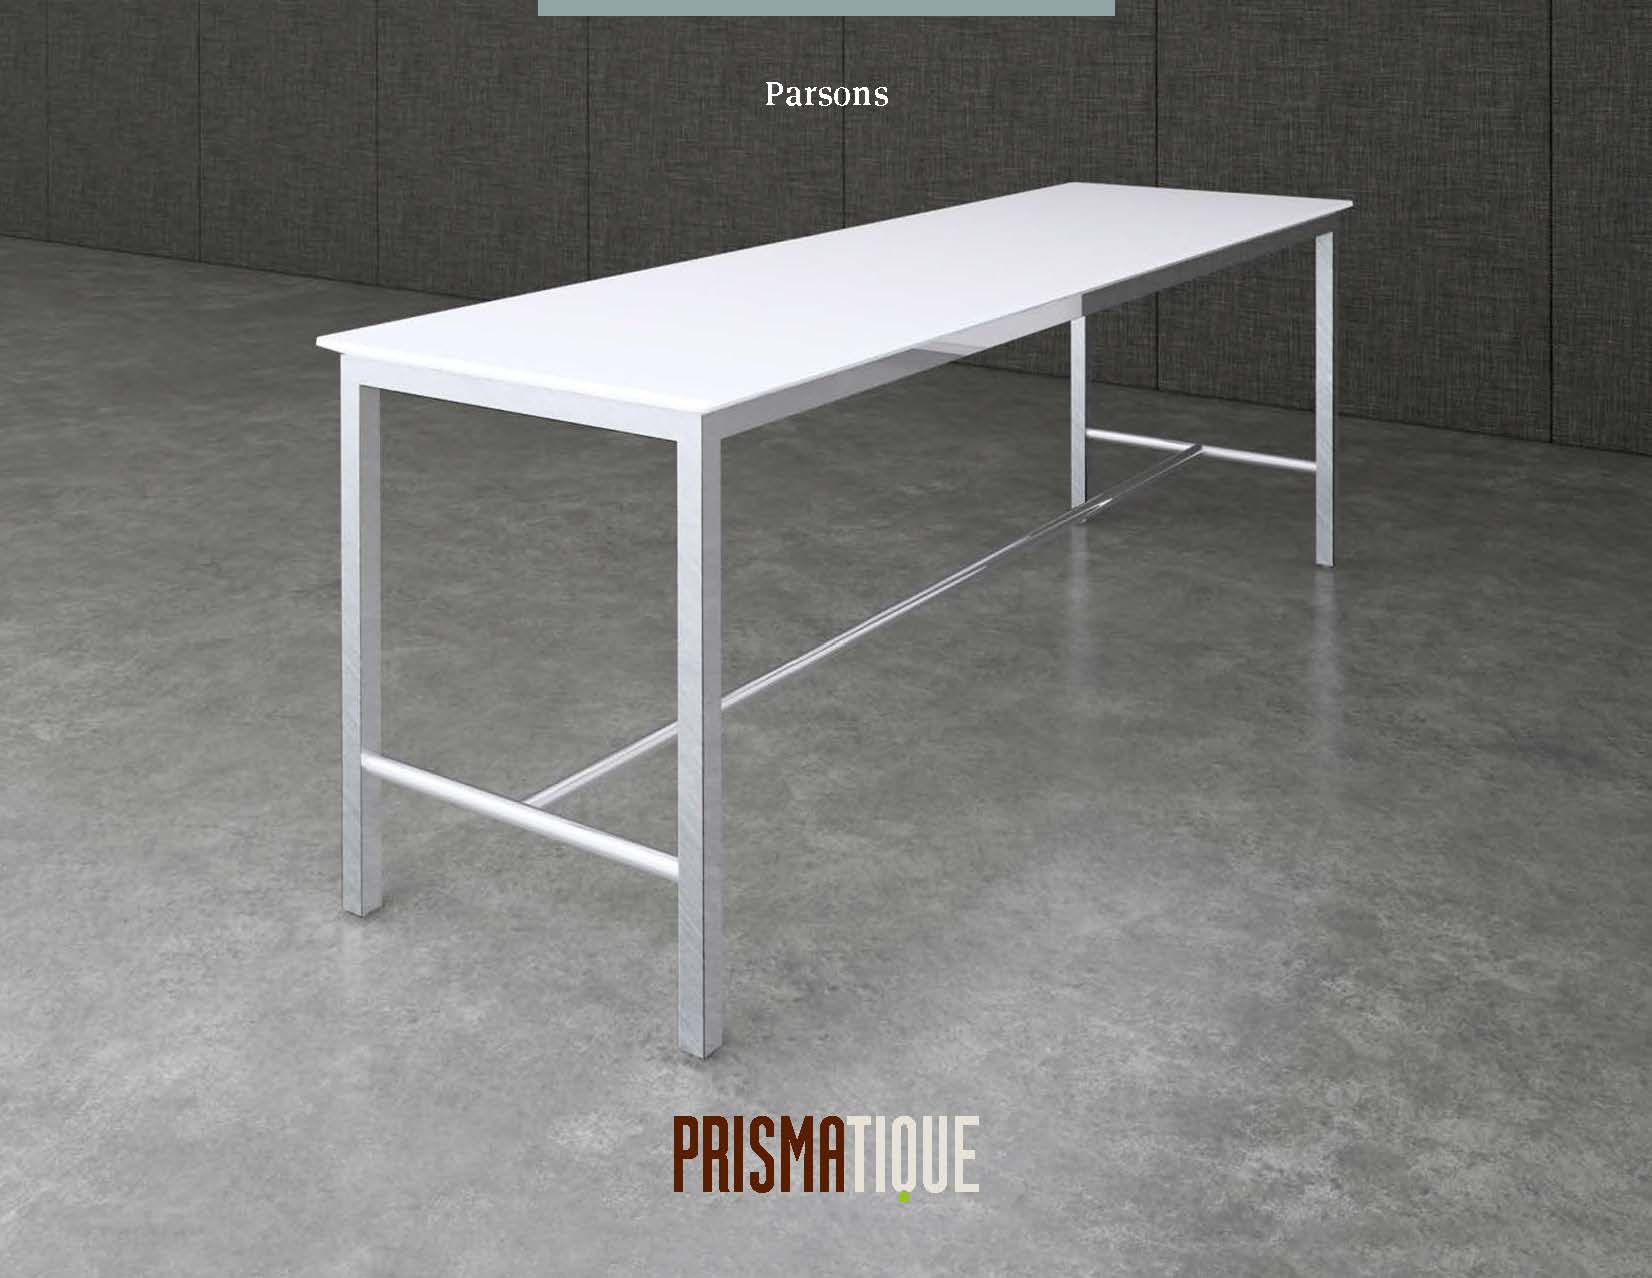 Prismatique Catalog_Parsons Brochure Cover